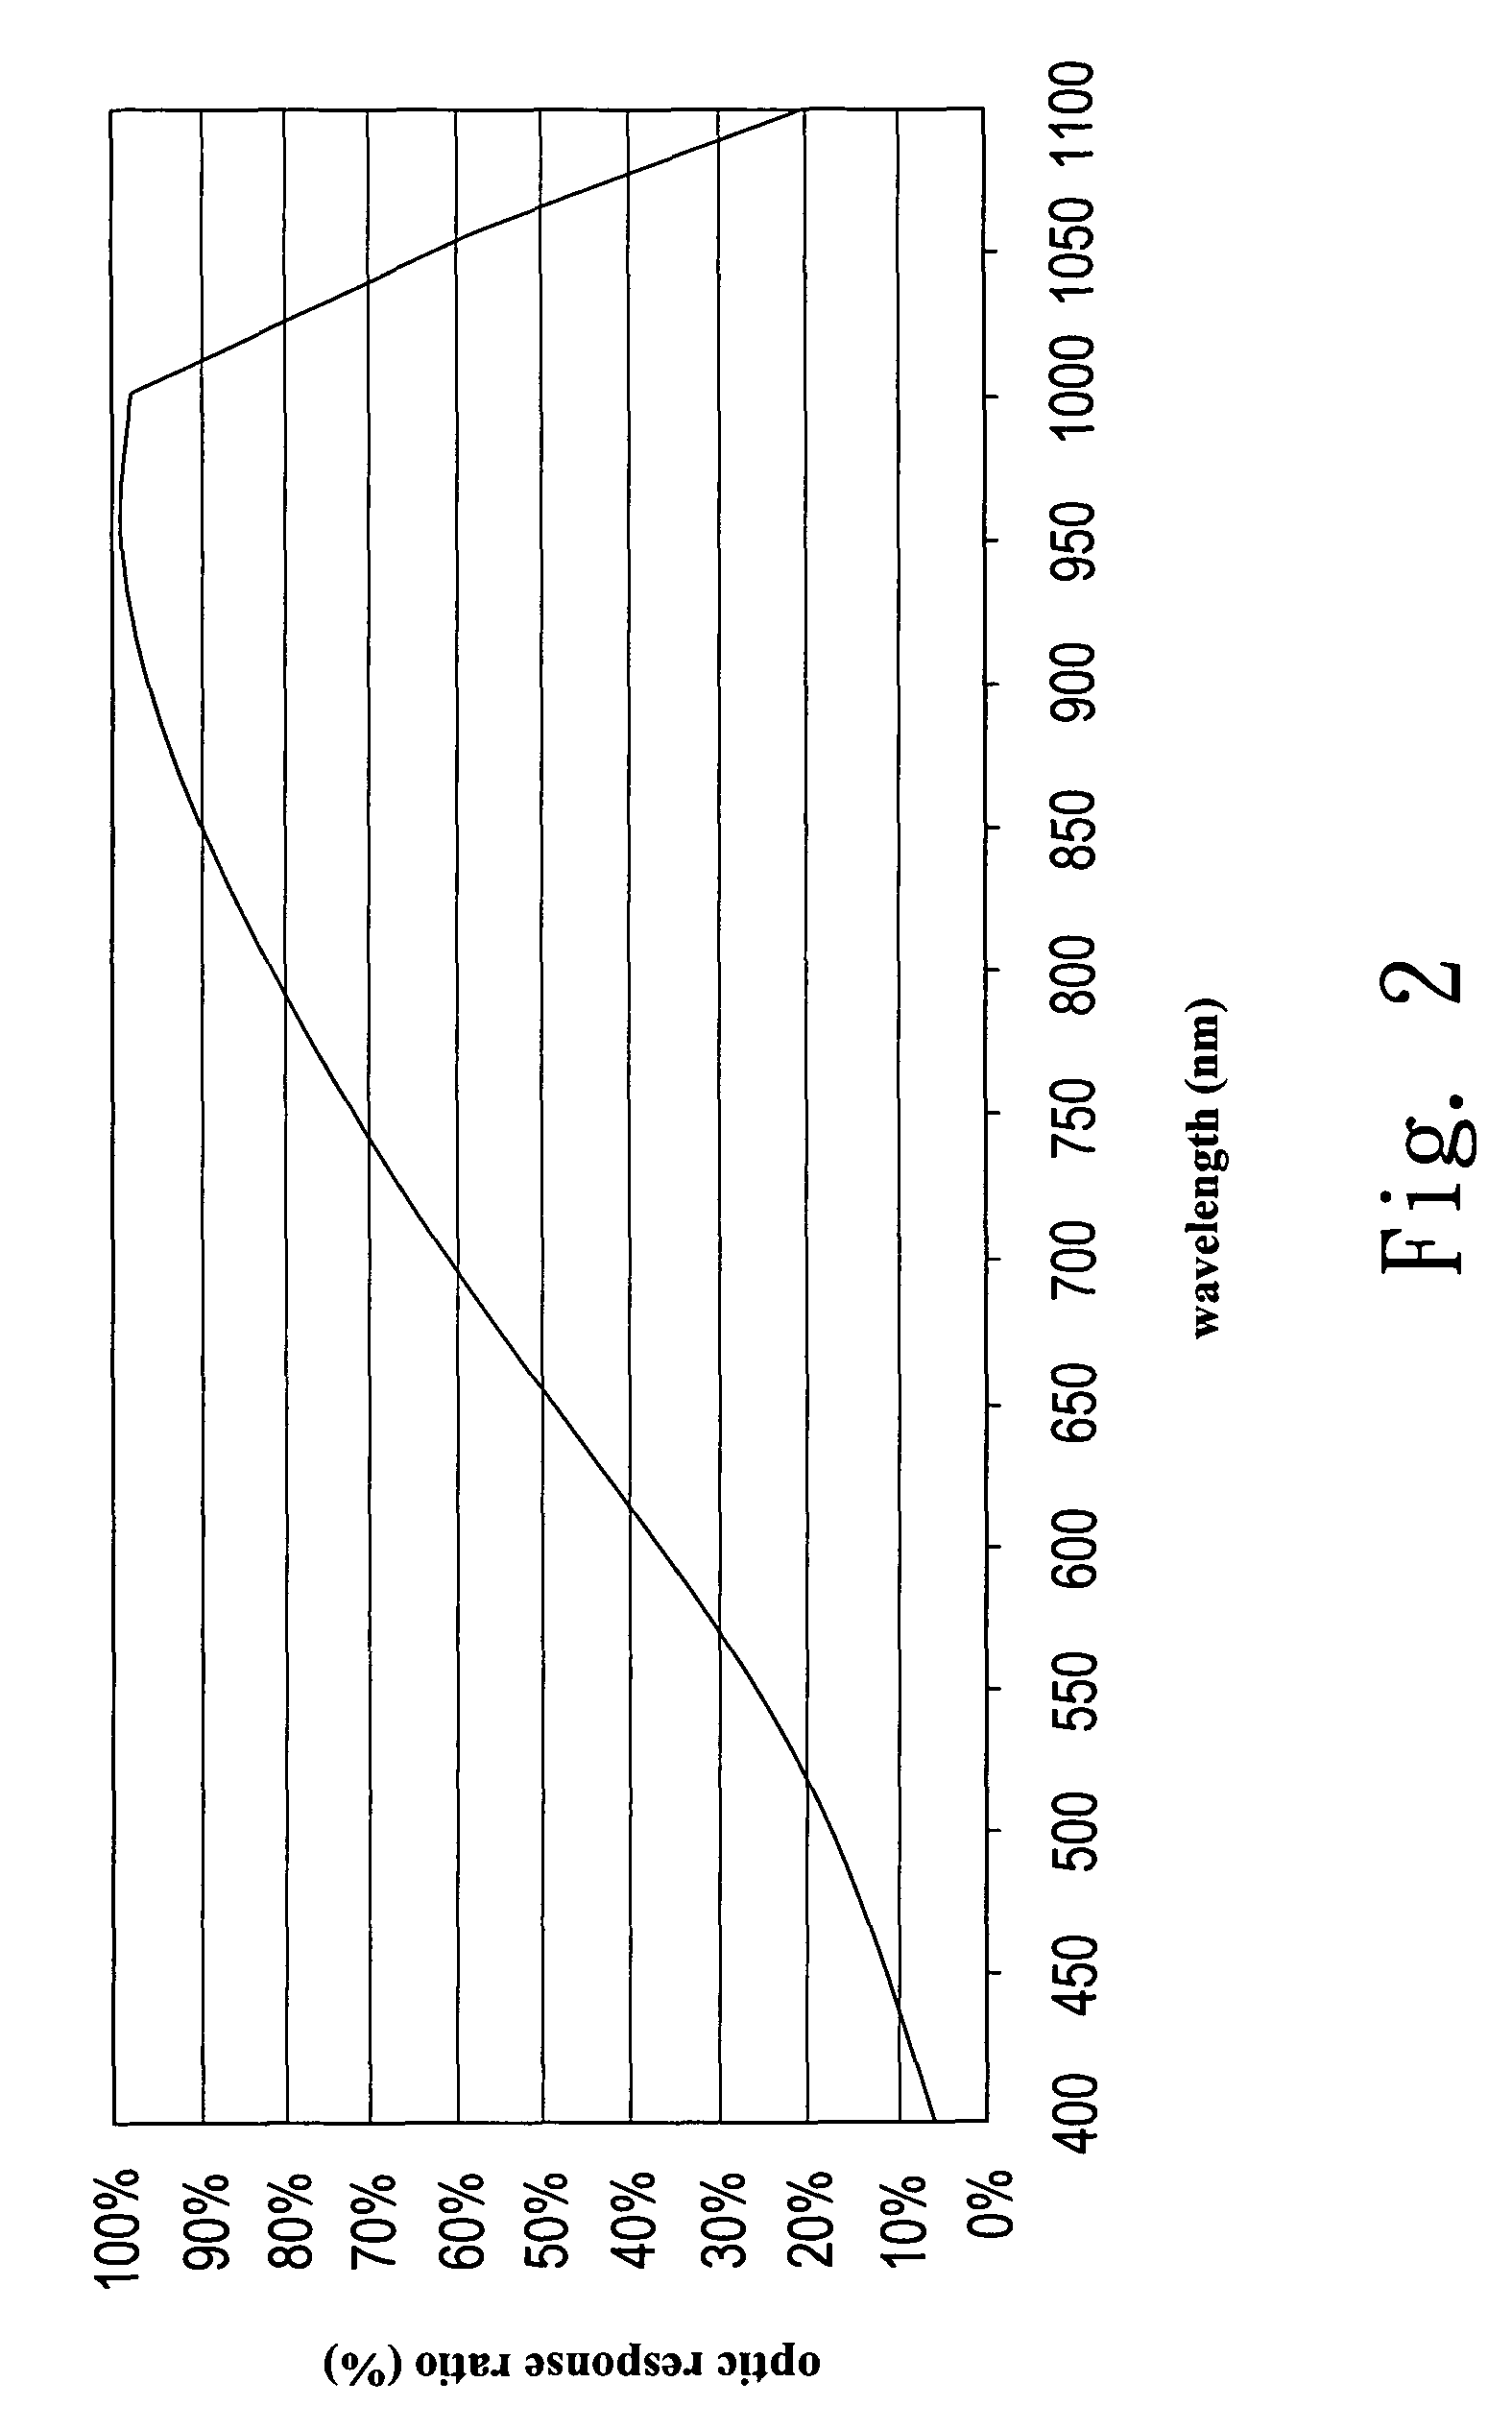 Output ratio adjusting method for optic sensor